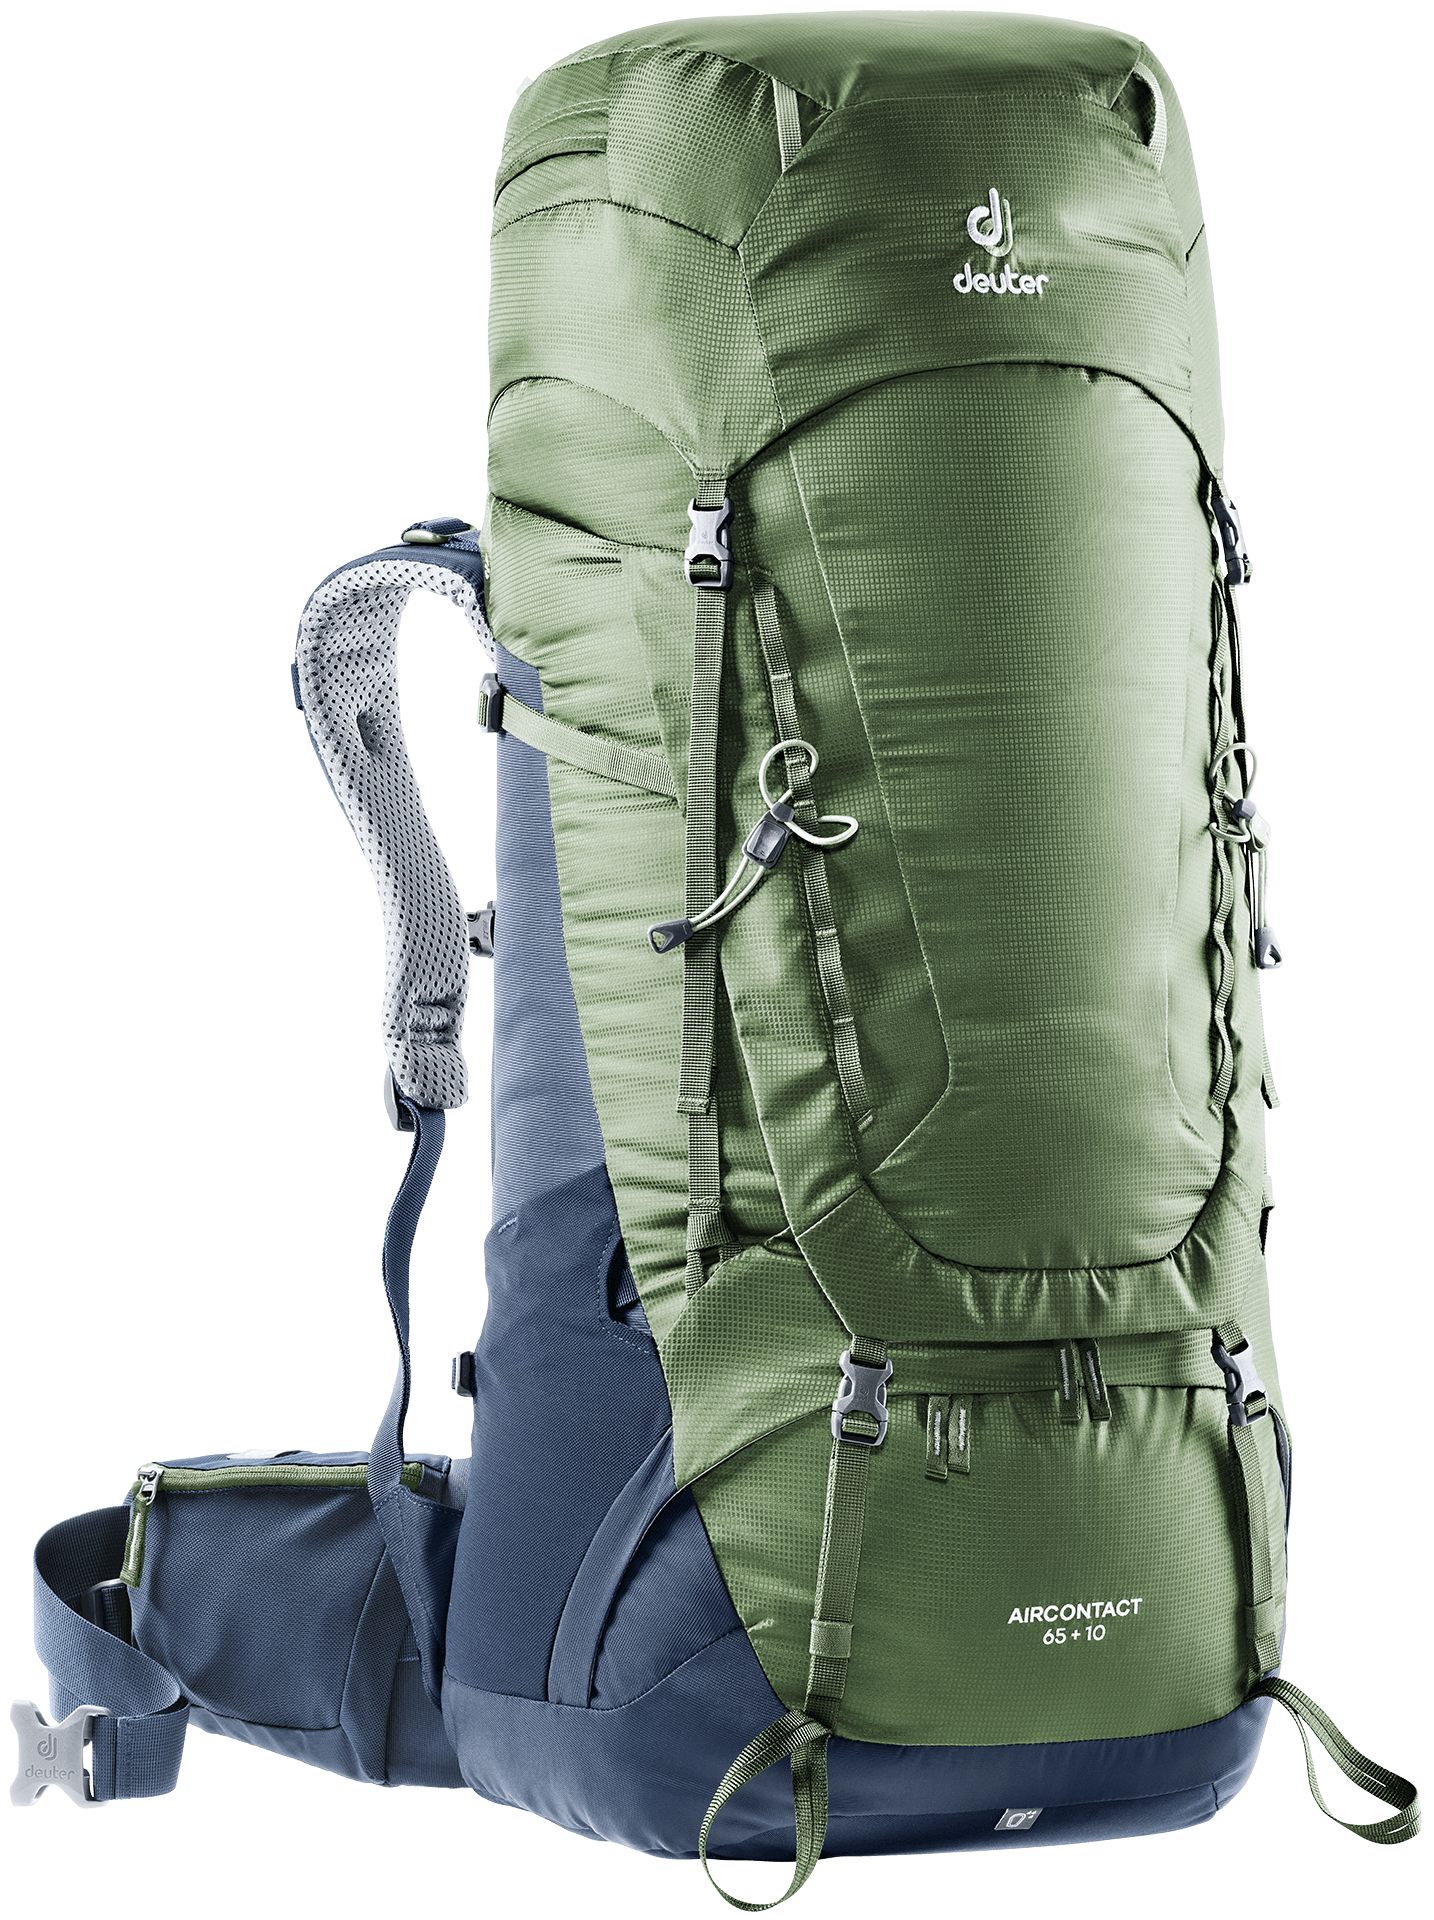 Deuter Aircontact 65+10 Backpack